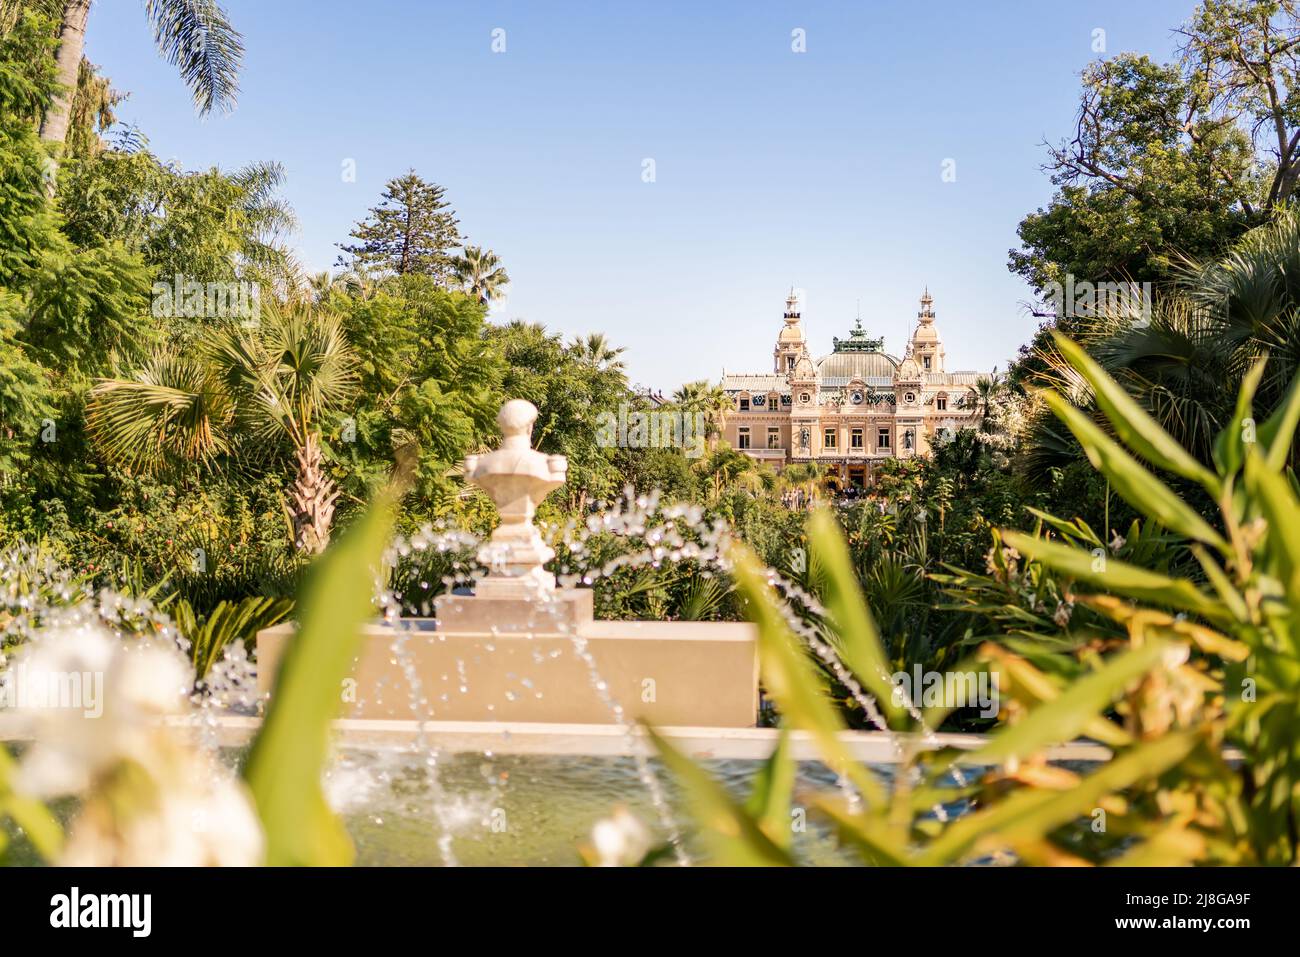 MÓNACO - 22 DE SEPTIEMBRE de 2021: El Casino de Monte Carlo visto desde el parque del jardín. El lugar es famoso por sus juegos de azar y su estilo de vida de lujo. Foto de stock